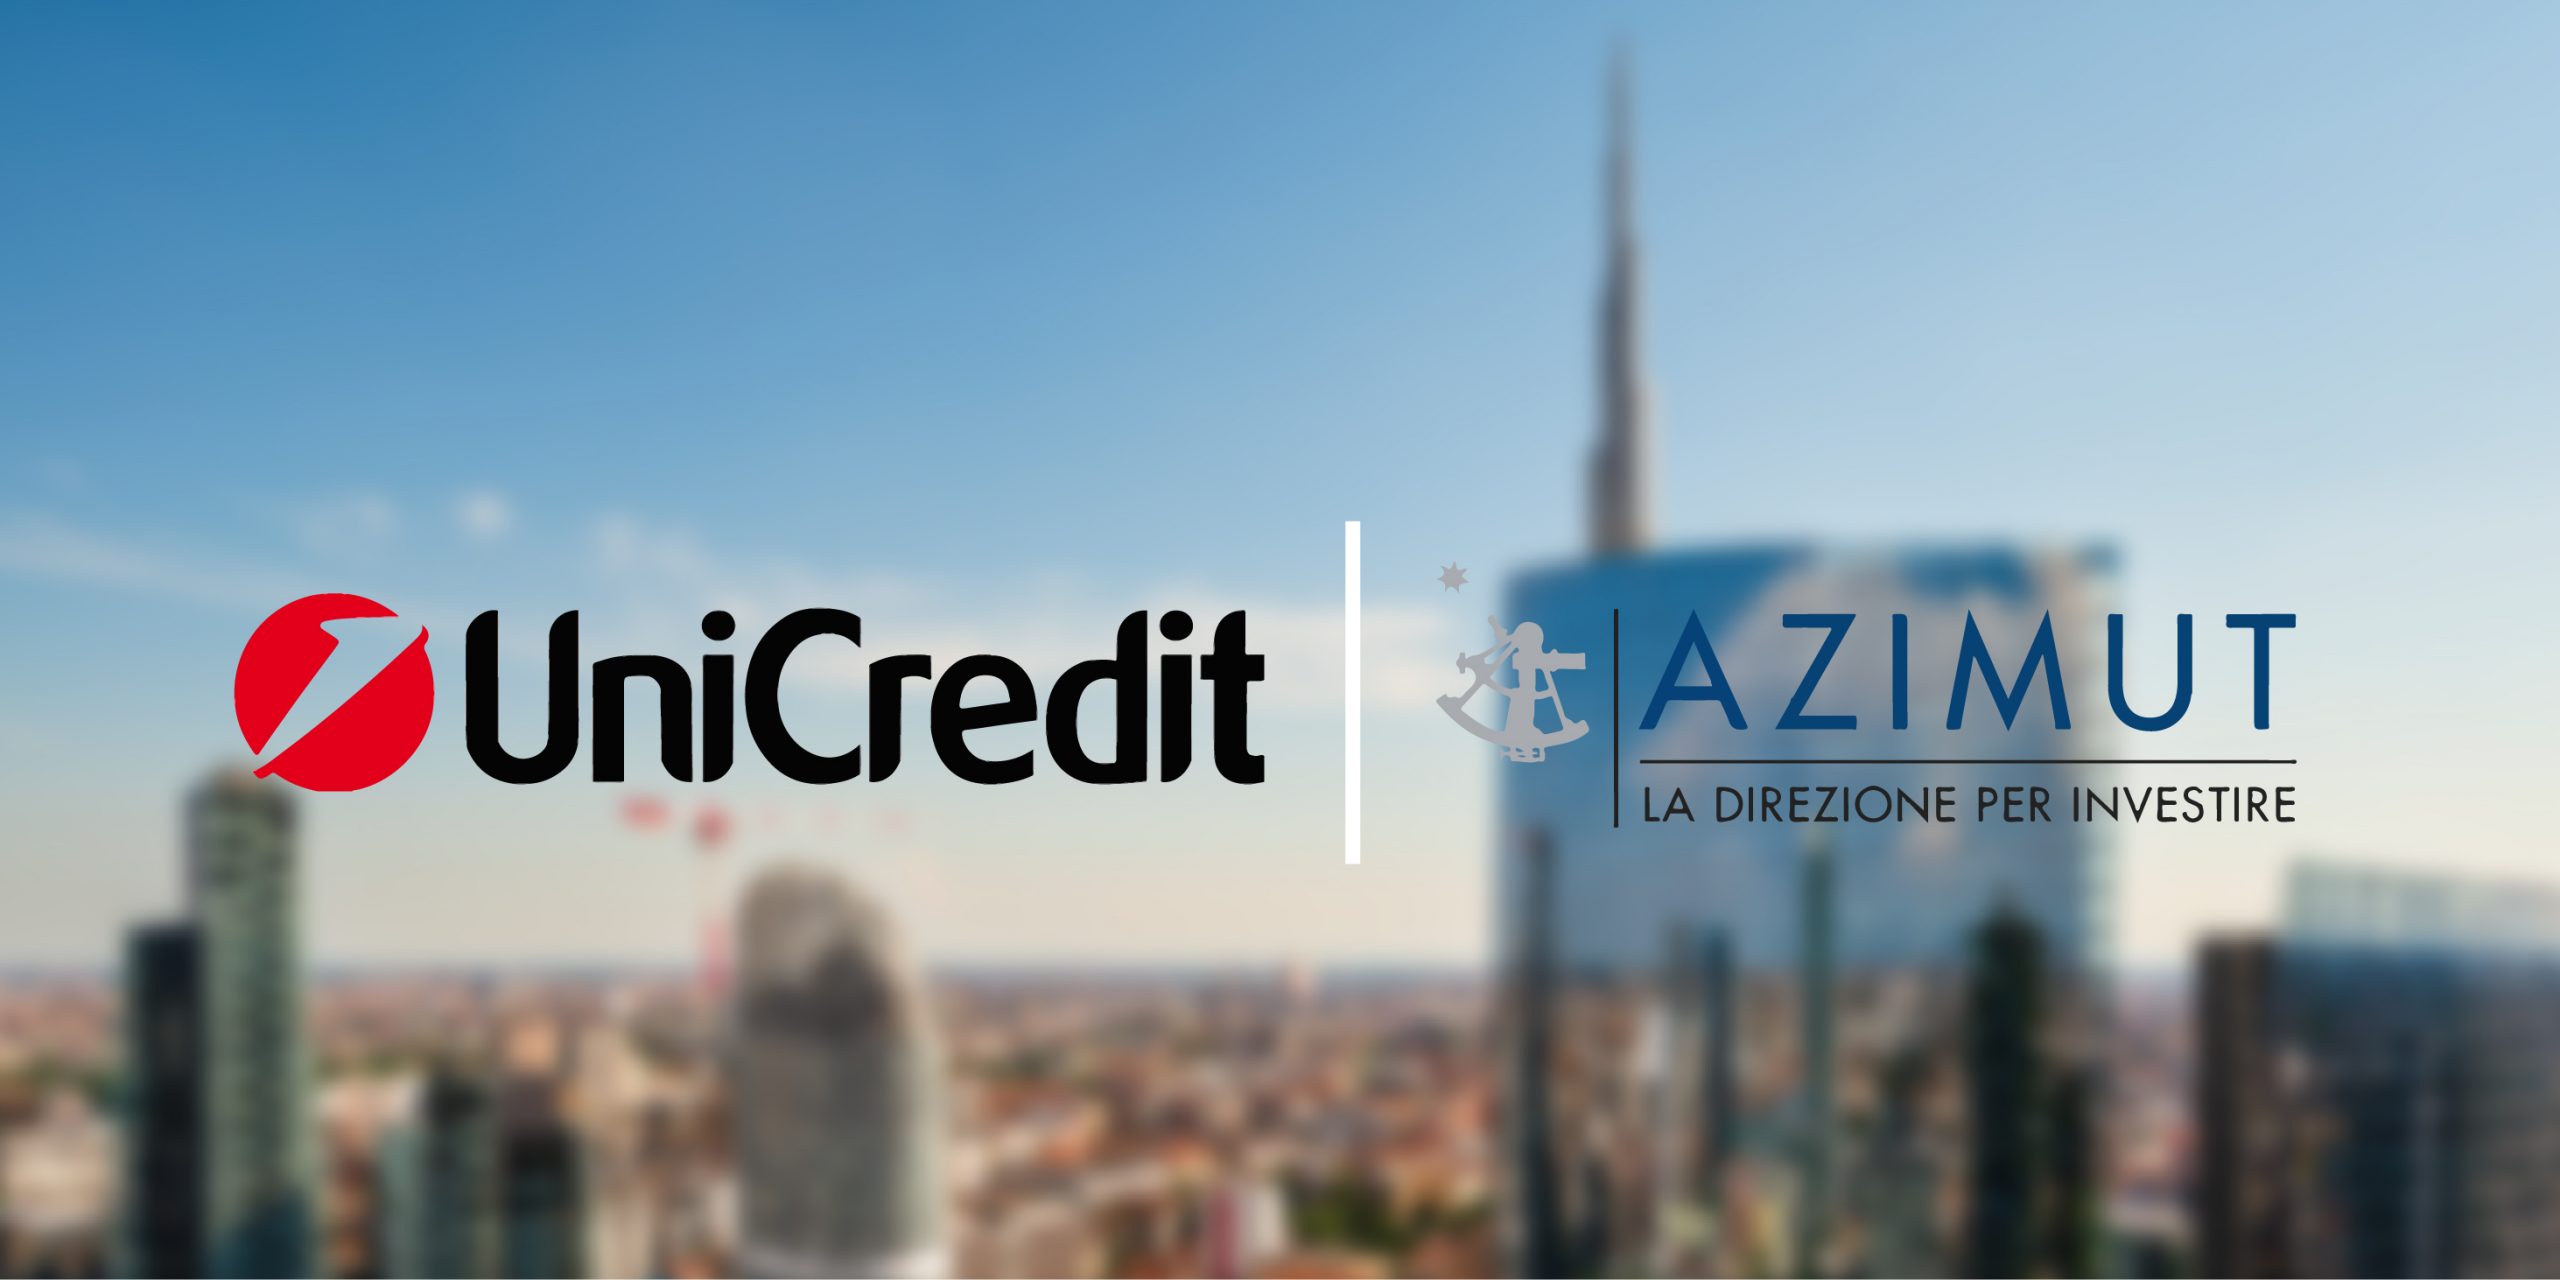 financialounge -  Azimut finanza Unicredit